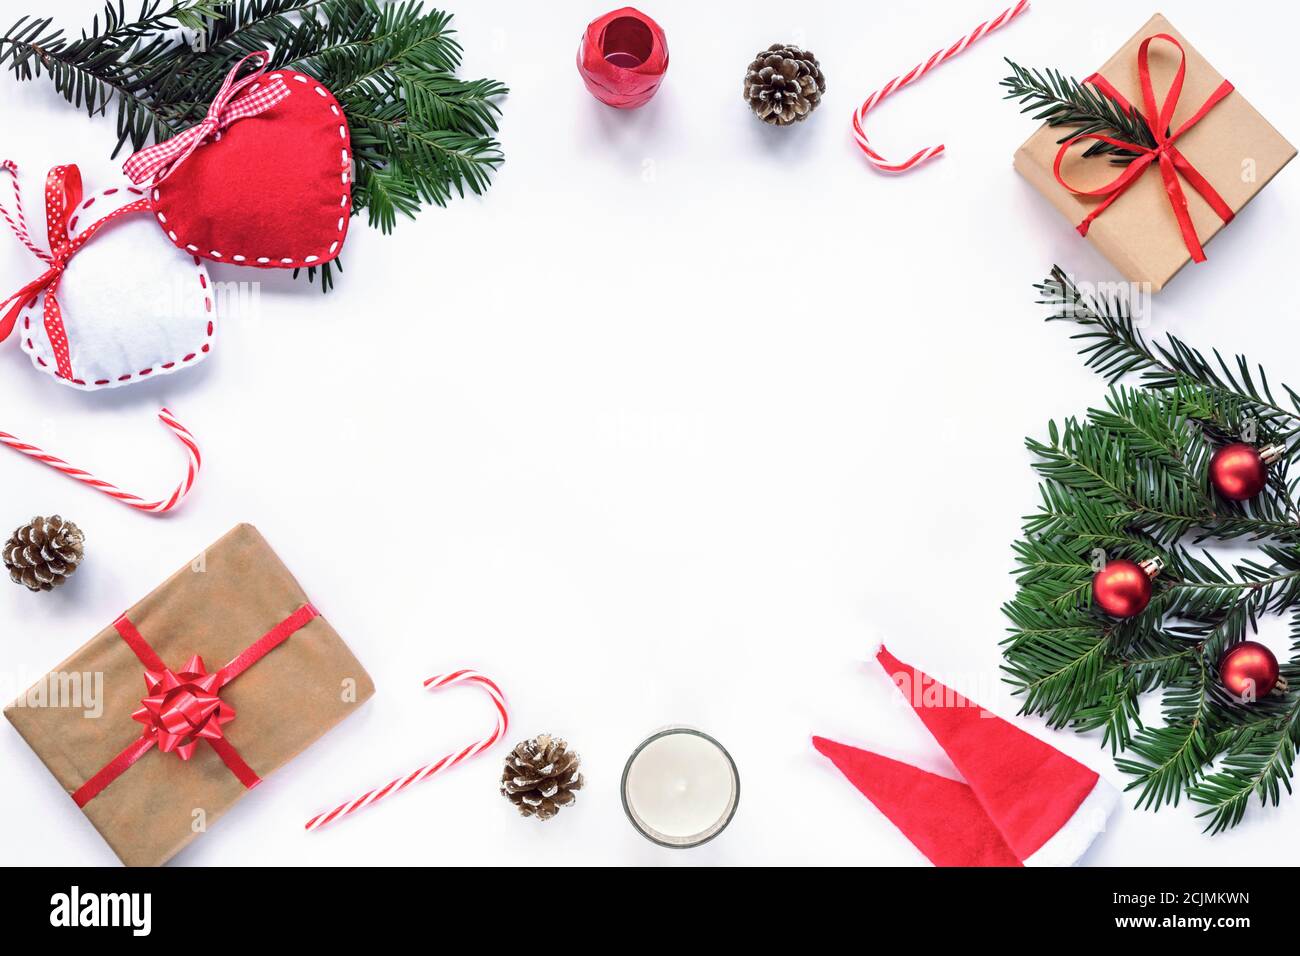 Cornice di Natale fatta di rami di abete, caramelle rosse, coni, cappelli di Babbo Natale, regalo in una scatola, decorazioni. Natale o Capodanno. Disposizione piatta, parte superiore Foto Stock